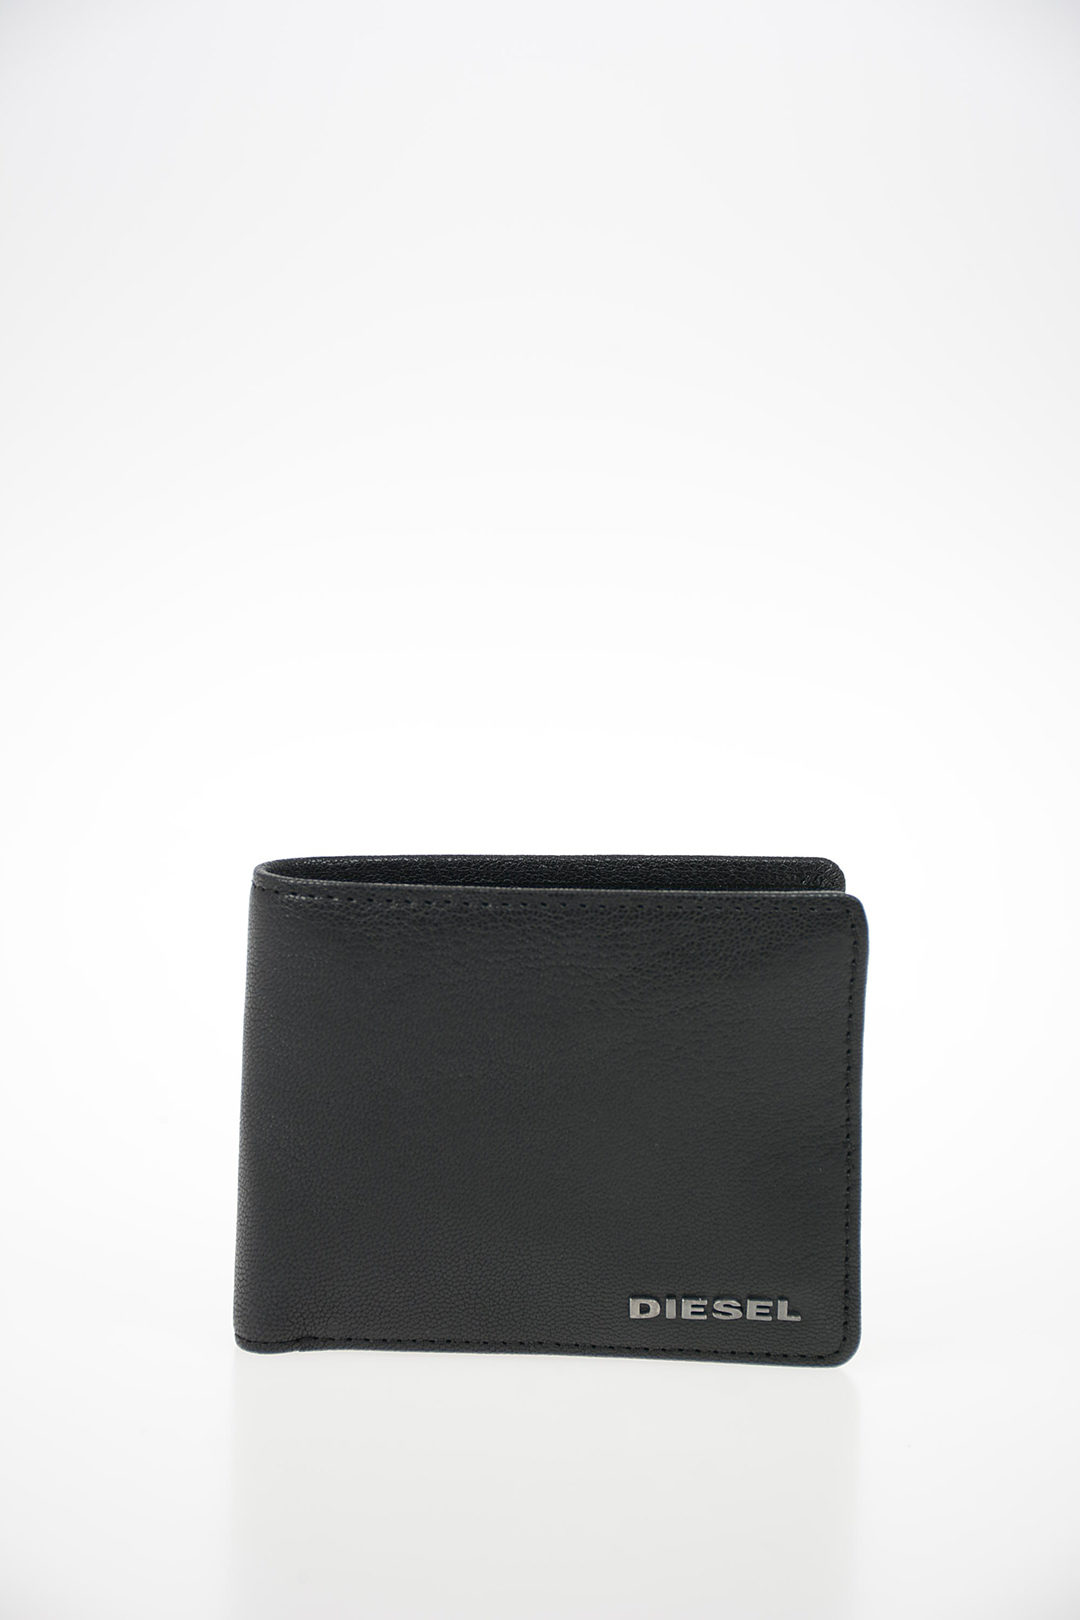 Diesel Leather JEM-J HIRESH XS wallet men - Glamood Outlet